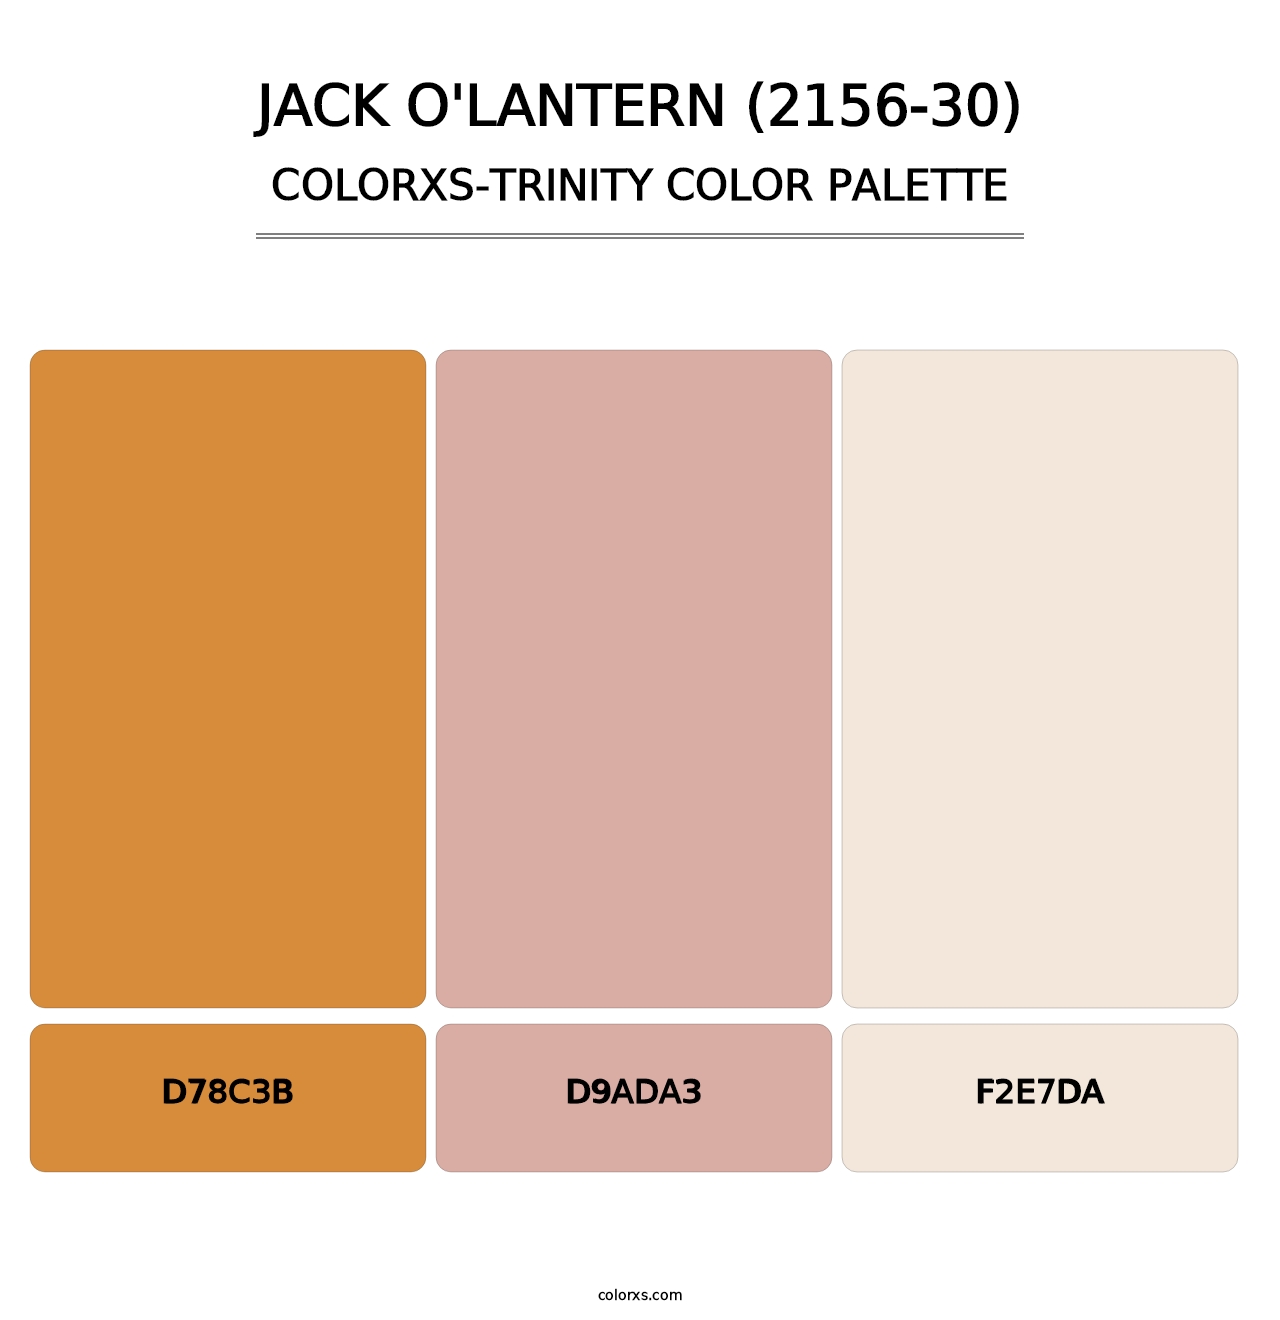 Jack O'Lantern (2156-30) - Colorxs Trinity Palette